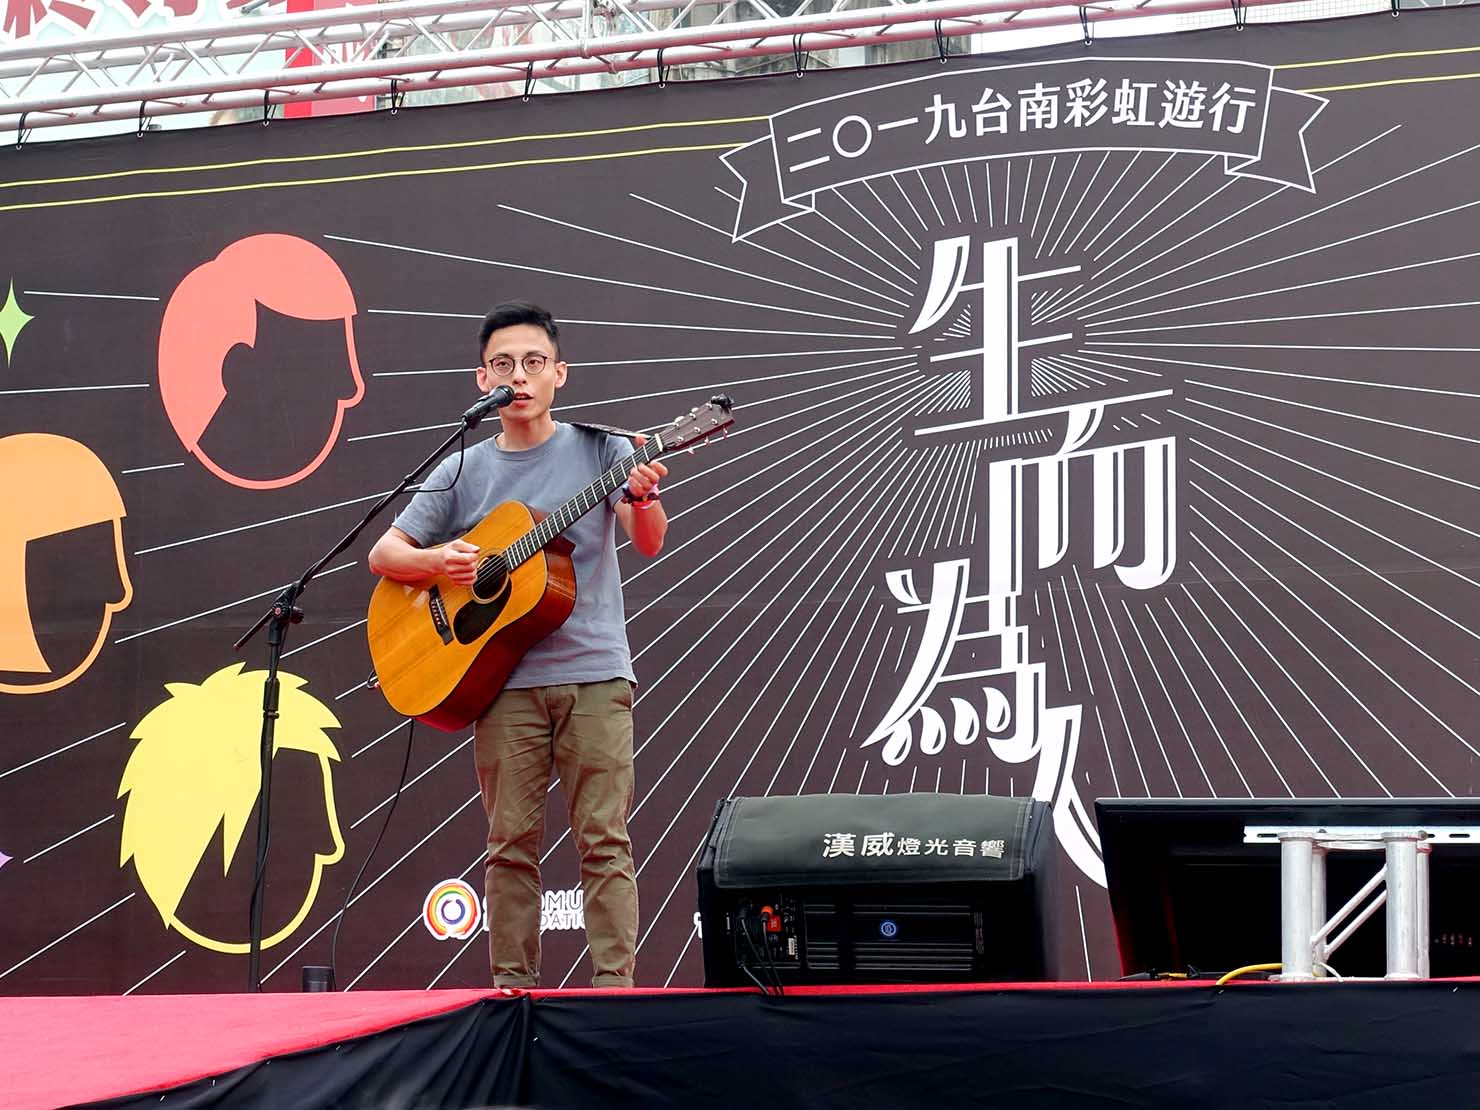 台南彩虹遊行（台南レインボーパレード）2019の会場ステージでミニライブを披露するアーティスト・克里夫さん